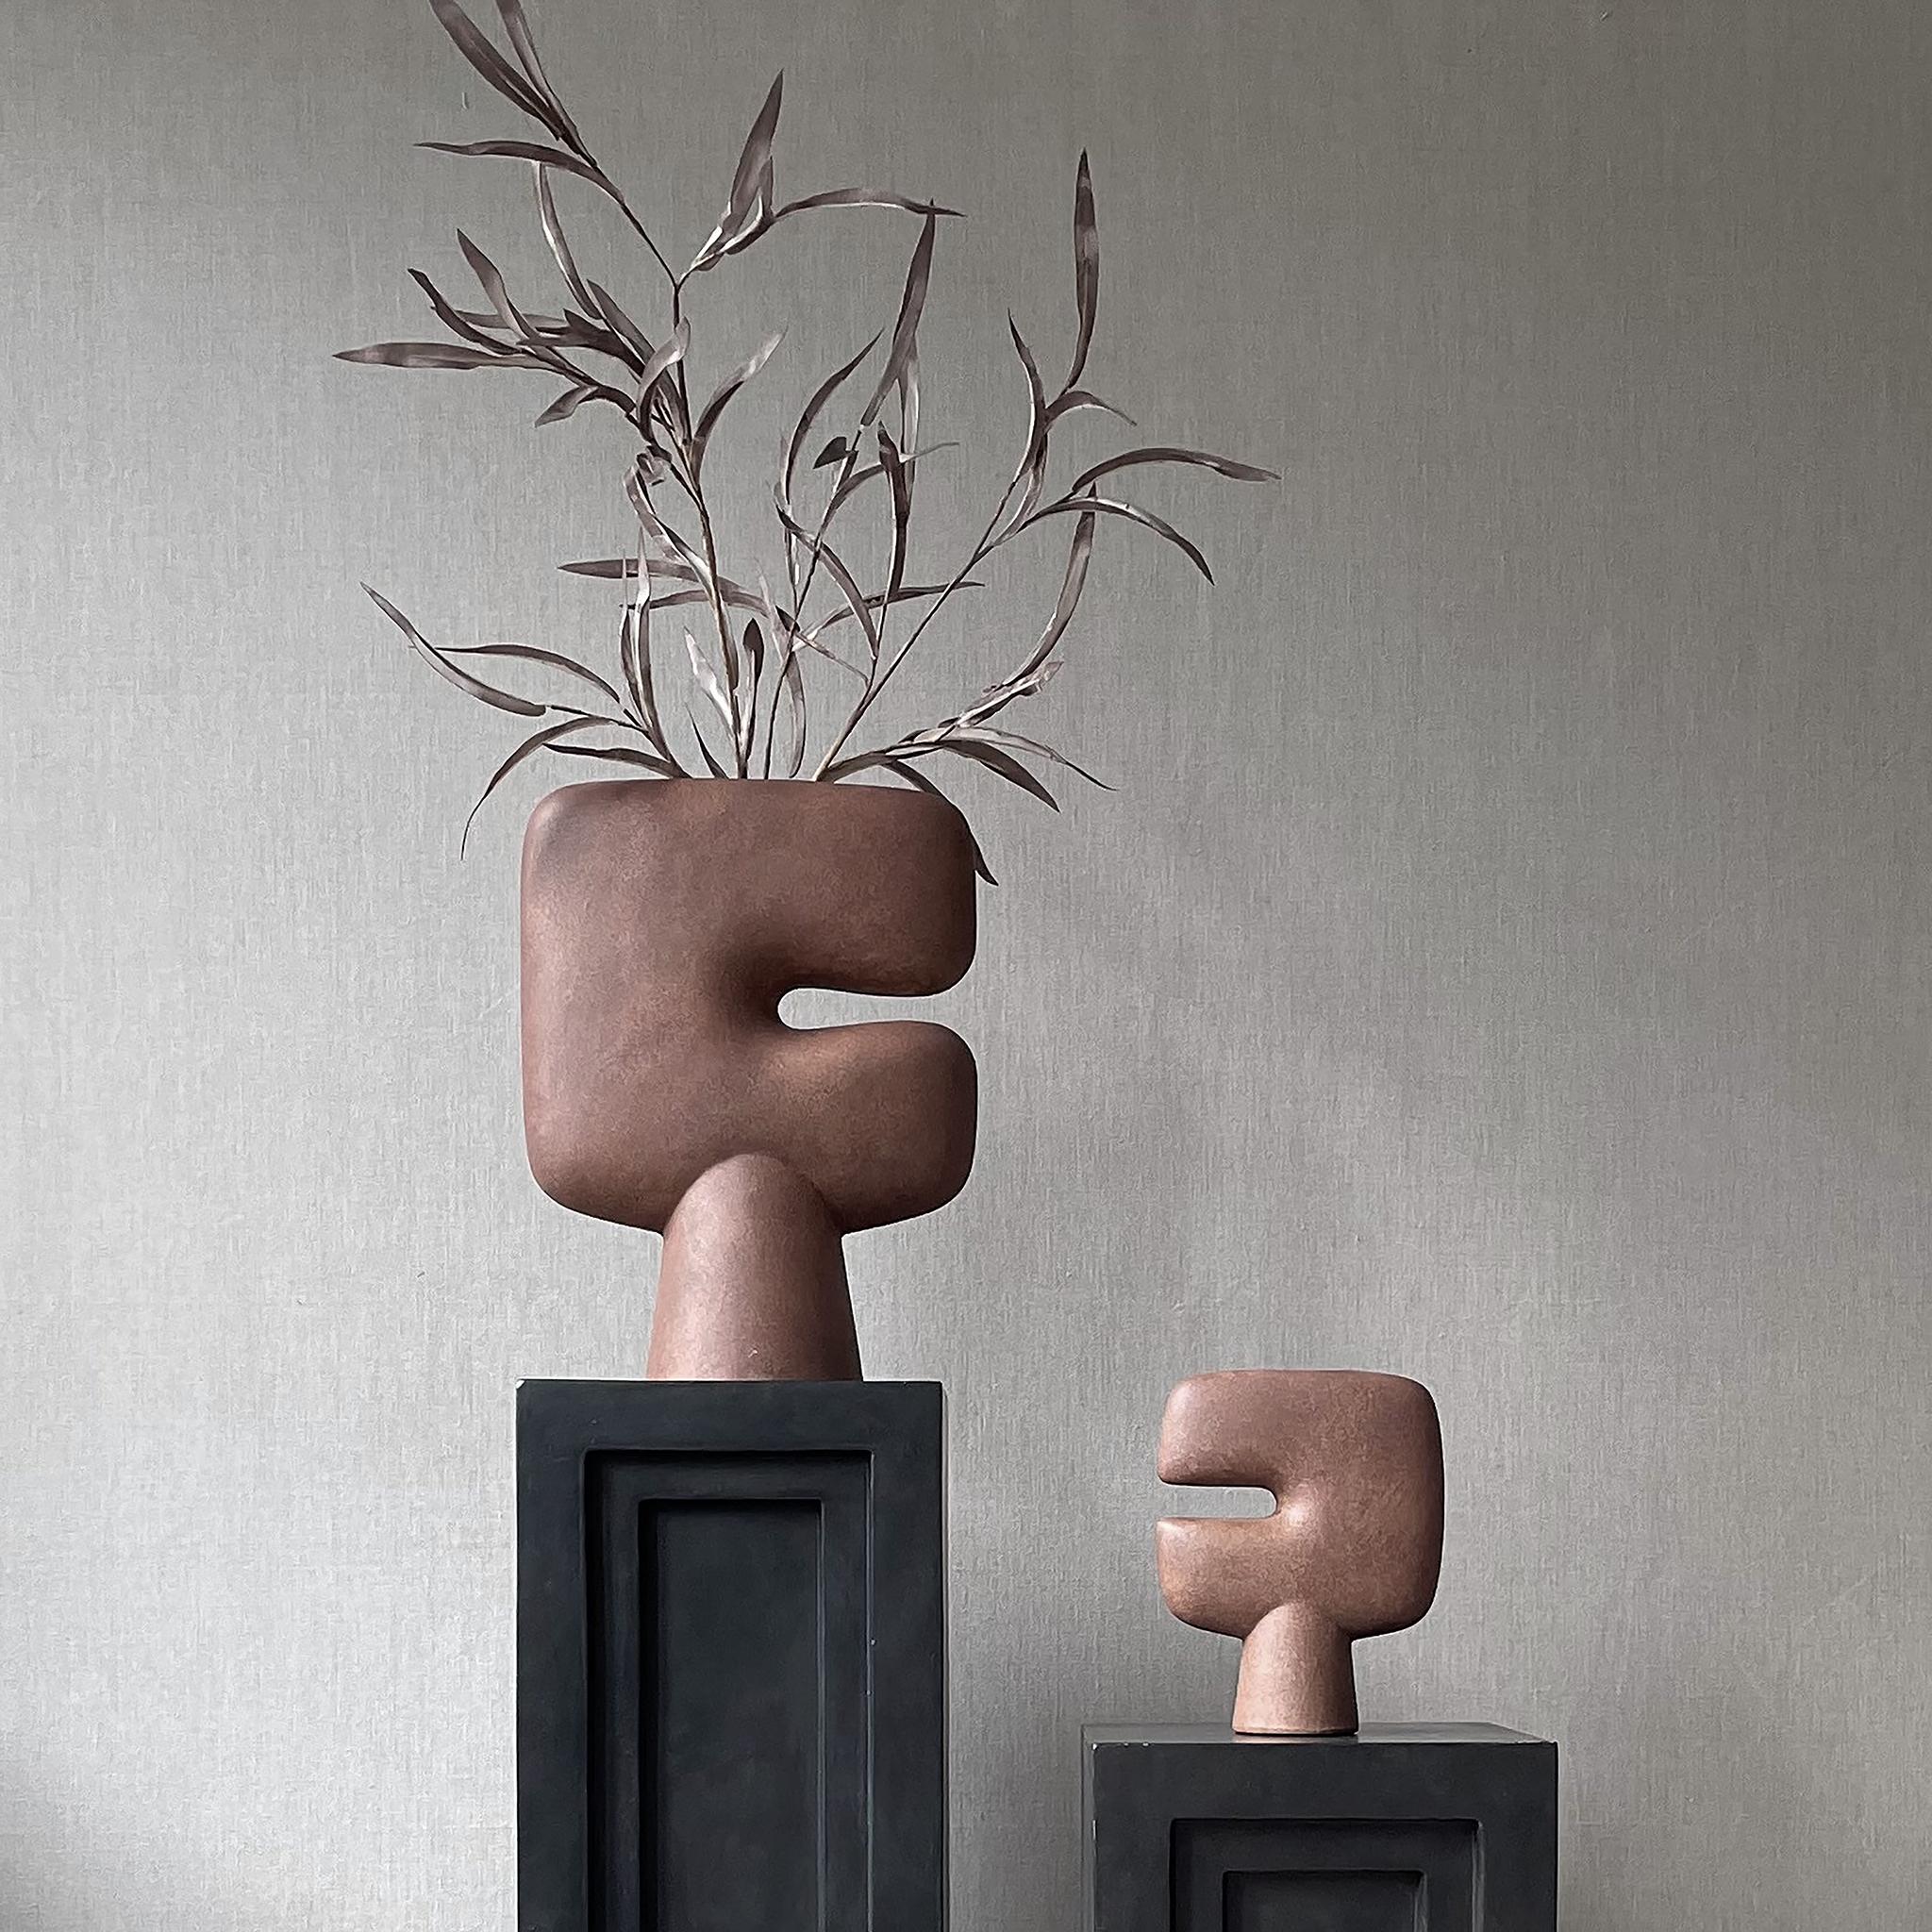 Un ensemble de 2 vases tribaux en terre cuite medio par 101 Copenhagen
Conçu par Kristian Sofus Hansen & Tommy Hyldahl
Dimensions : L24 / L10 / H30 CM
Matériaux : Céramique

La collection Tribal est une série de vases conçus comme une prise